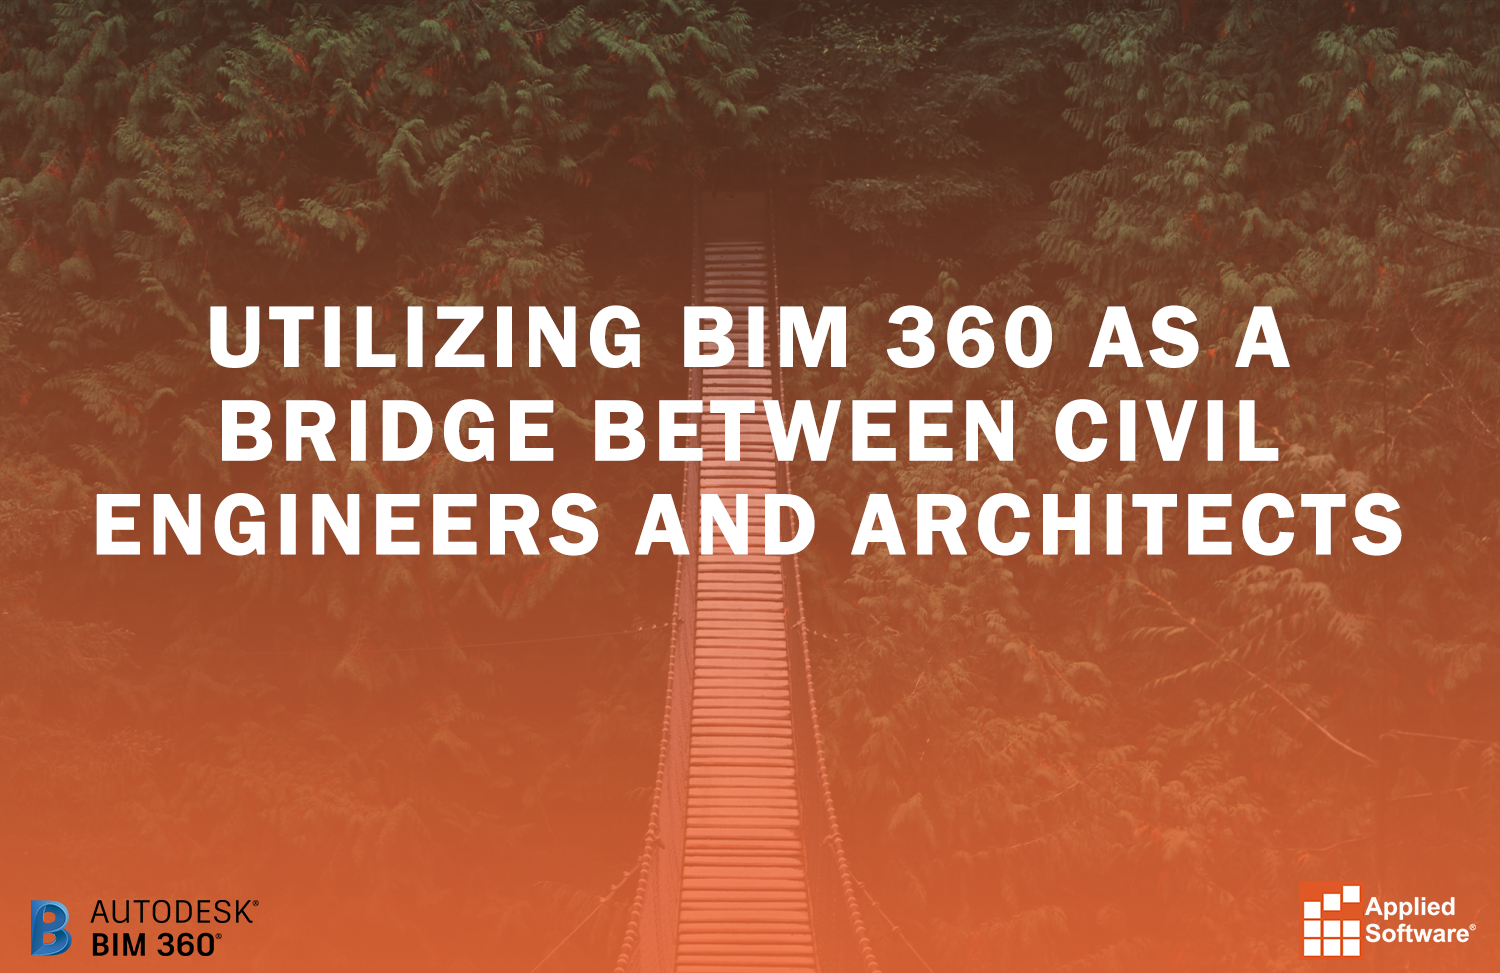 使用BIM 360桥土木工程师、建筑师